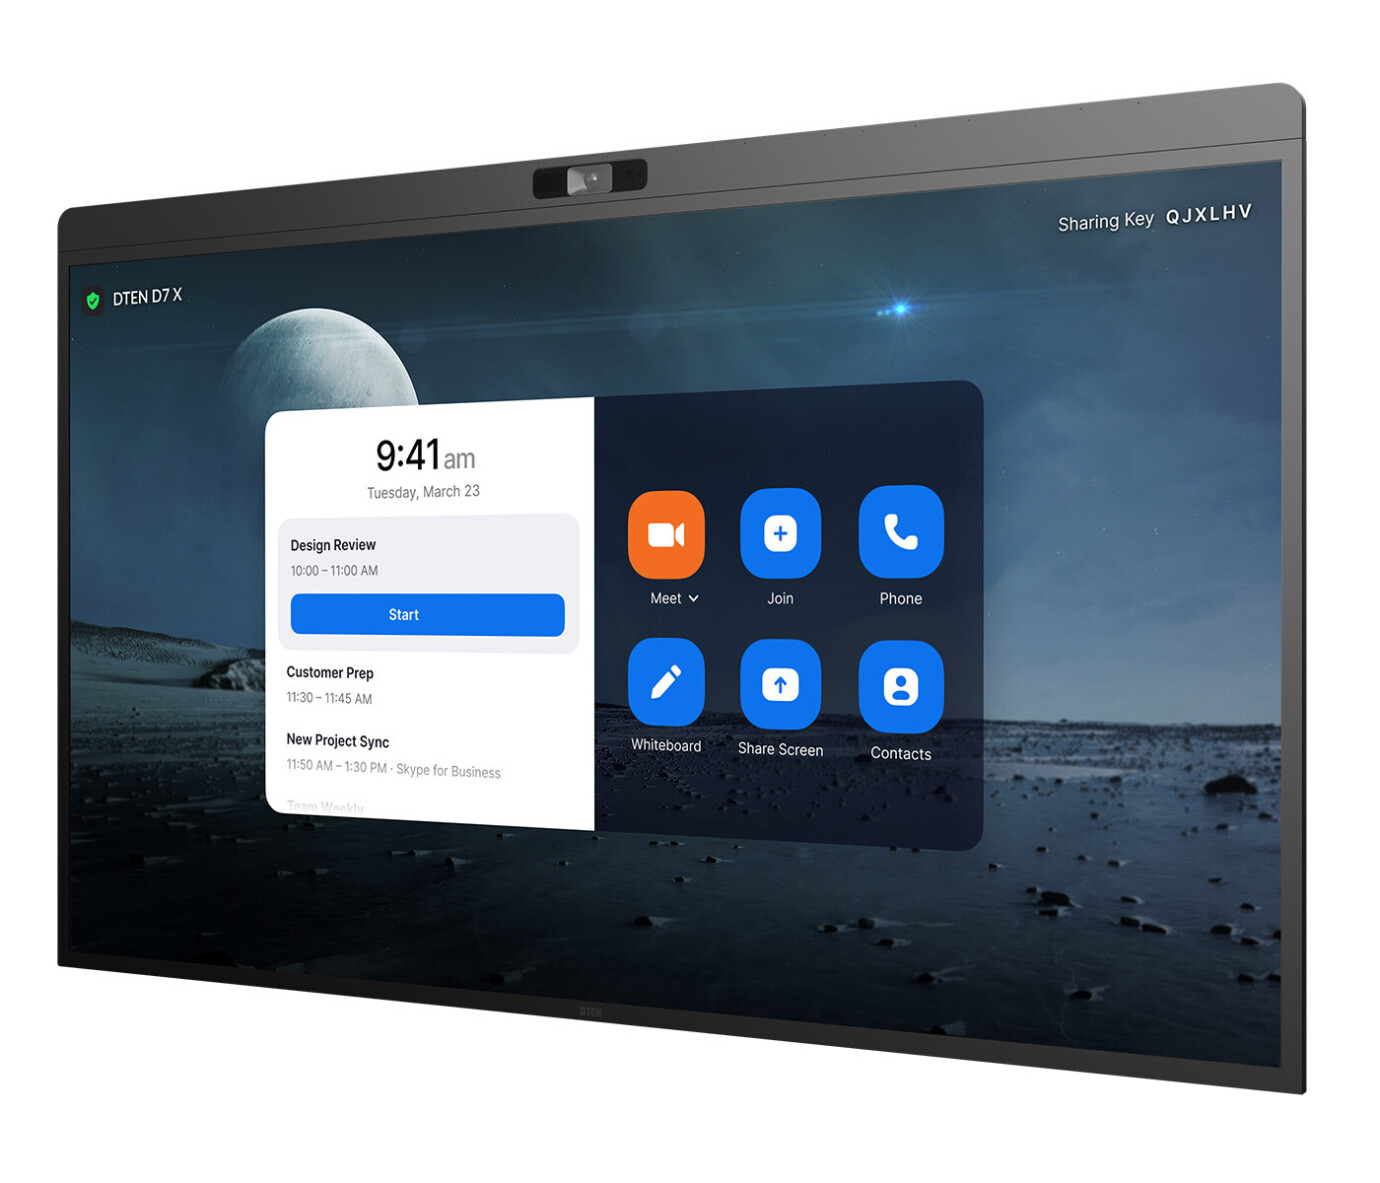 Vorschau: DTEN D7X 55" All-in-One Videokonferenz Multi-Touch Display mit 4K Auflösung